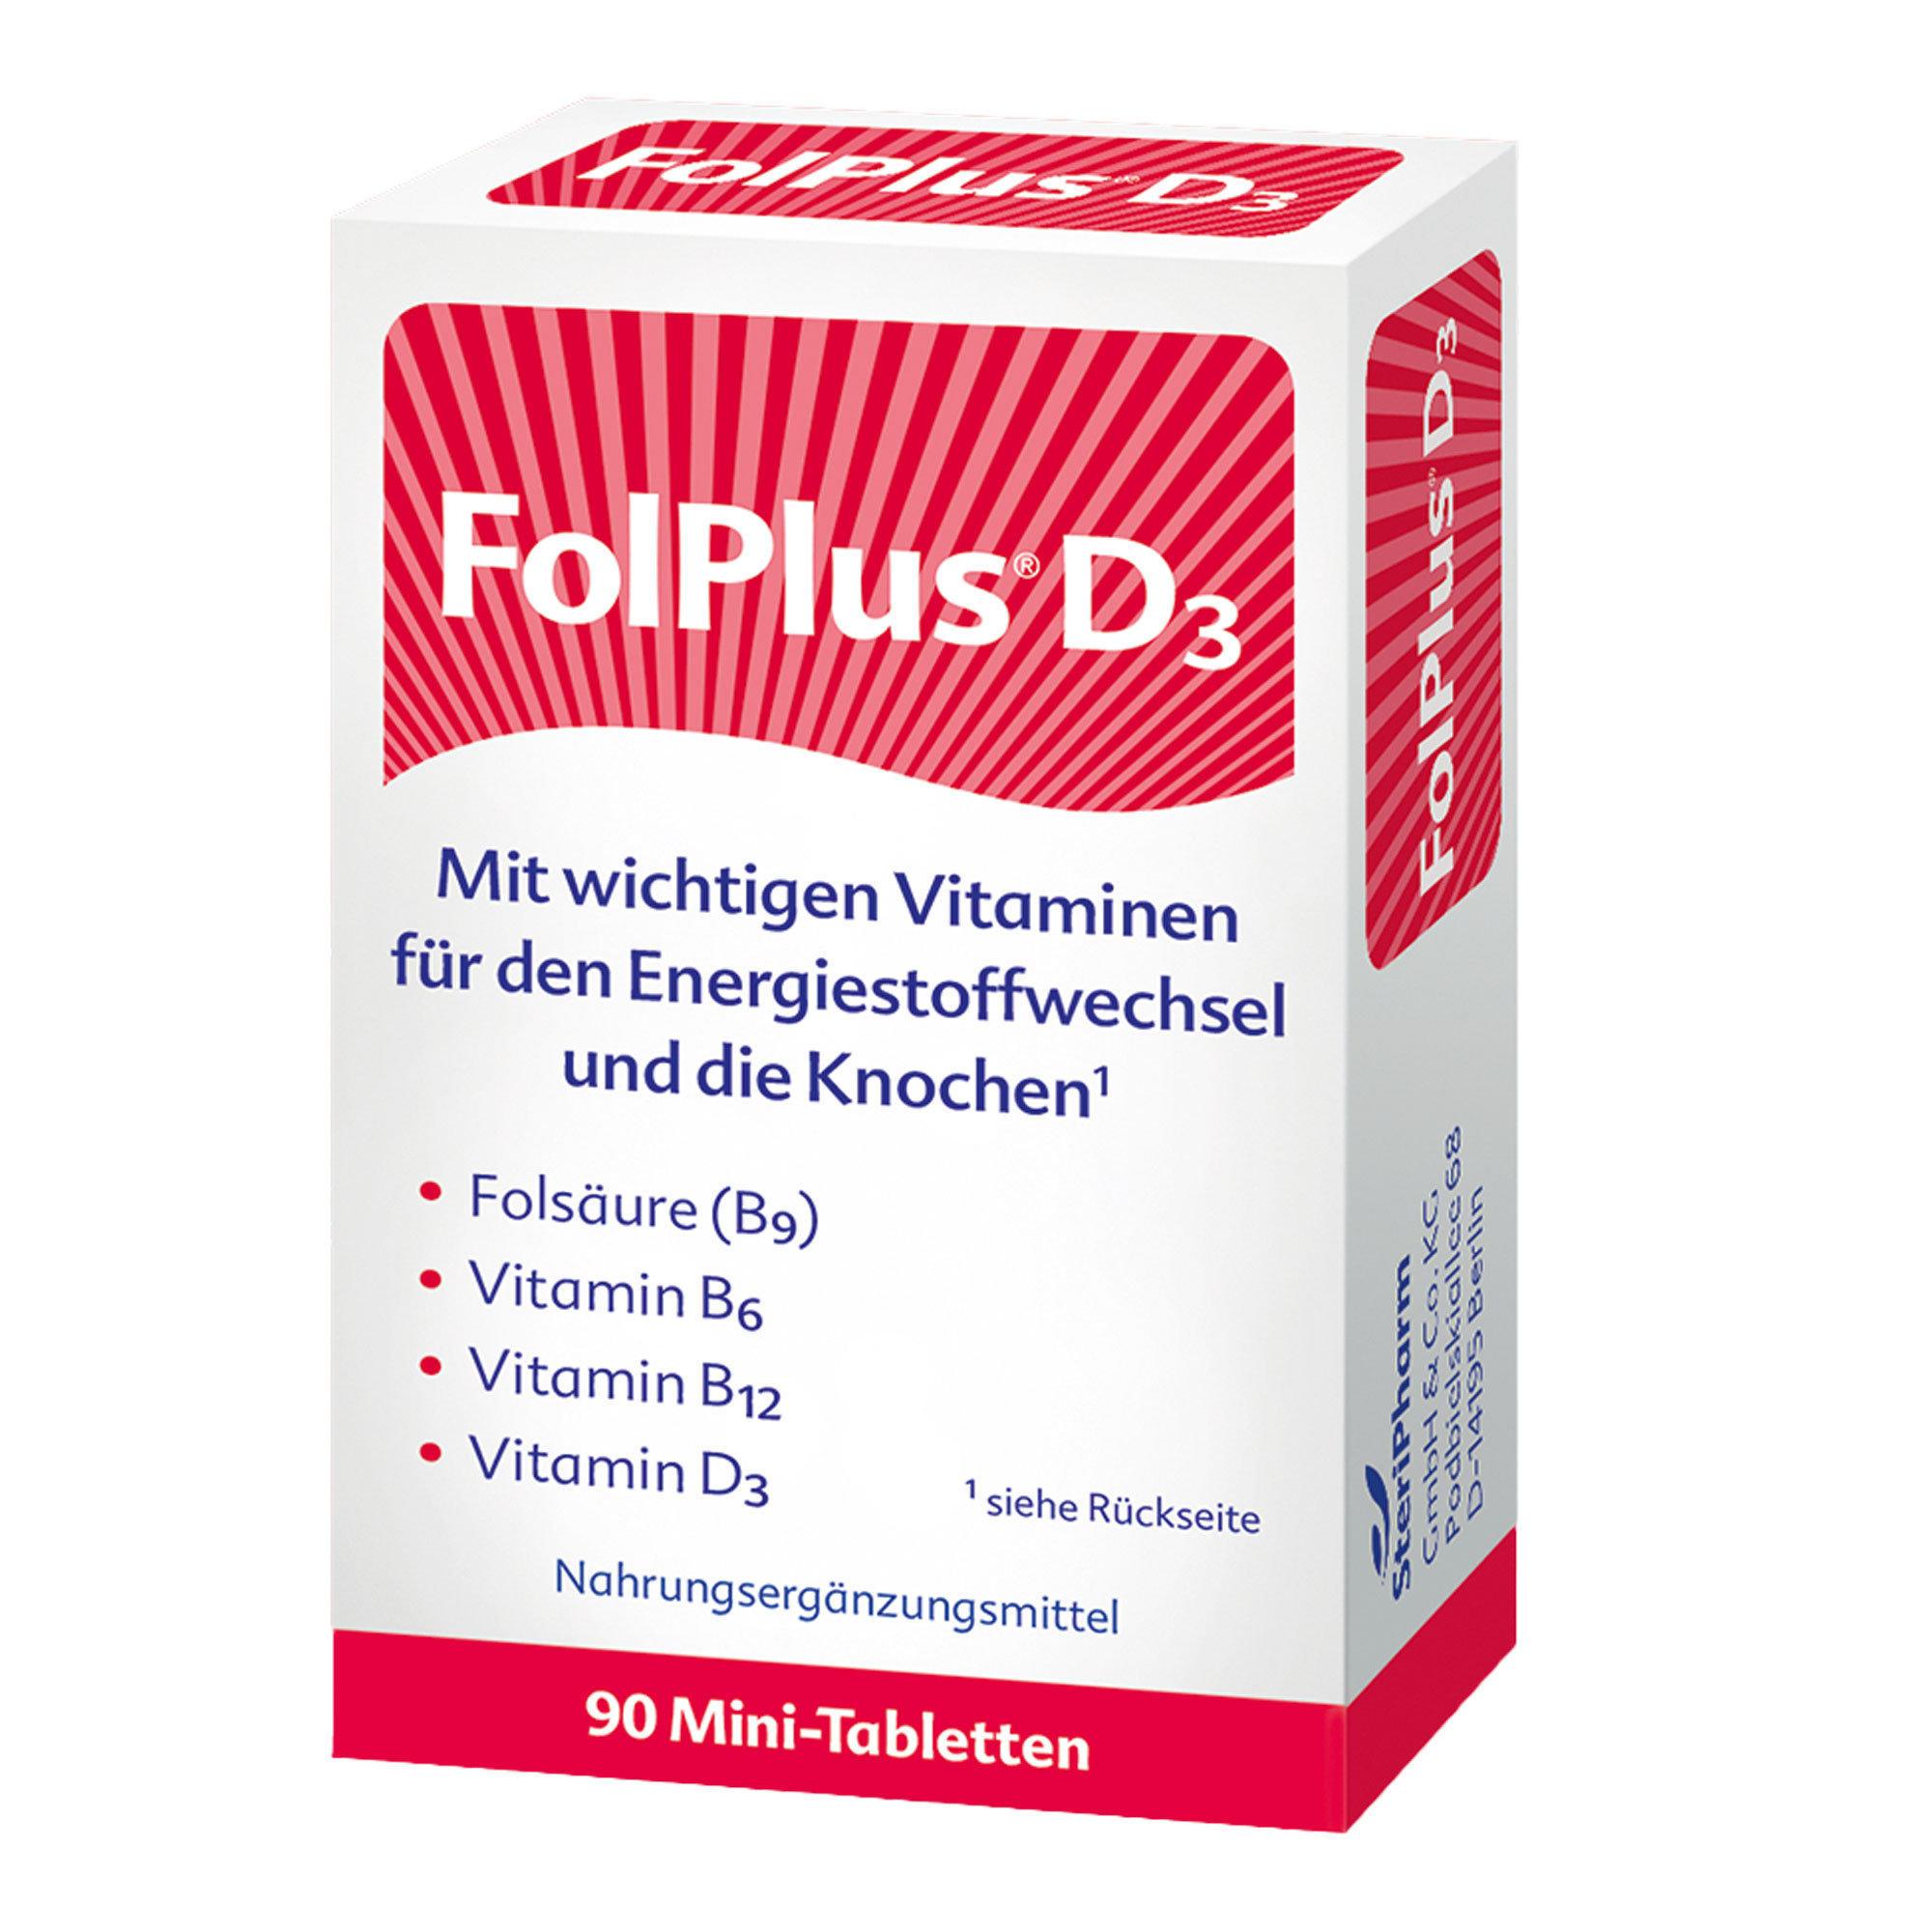 Nahrungsergänzungsmittel mit Folsäure, Vitamin B6, Vitamin B12 & Vitamin D3.